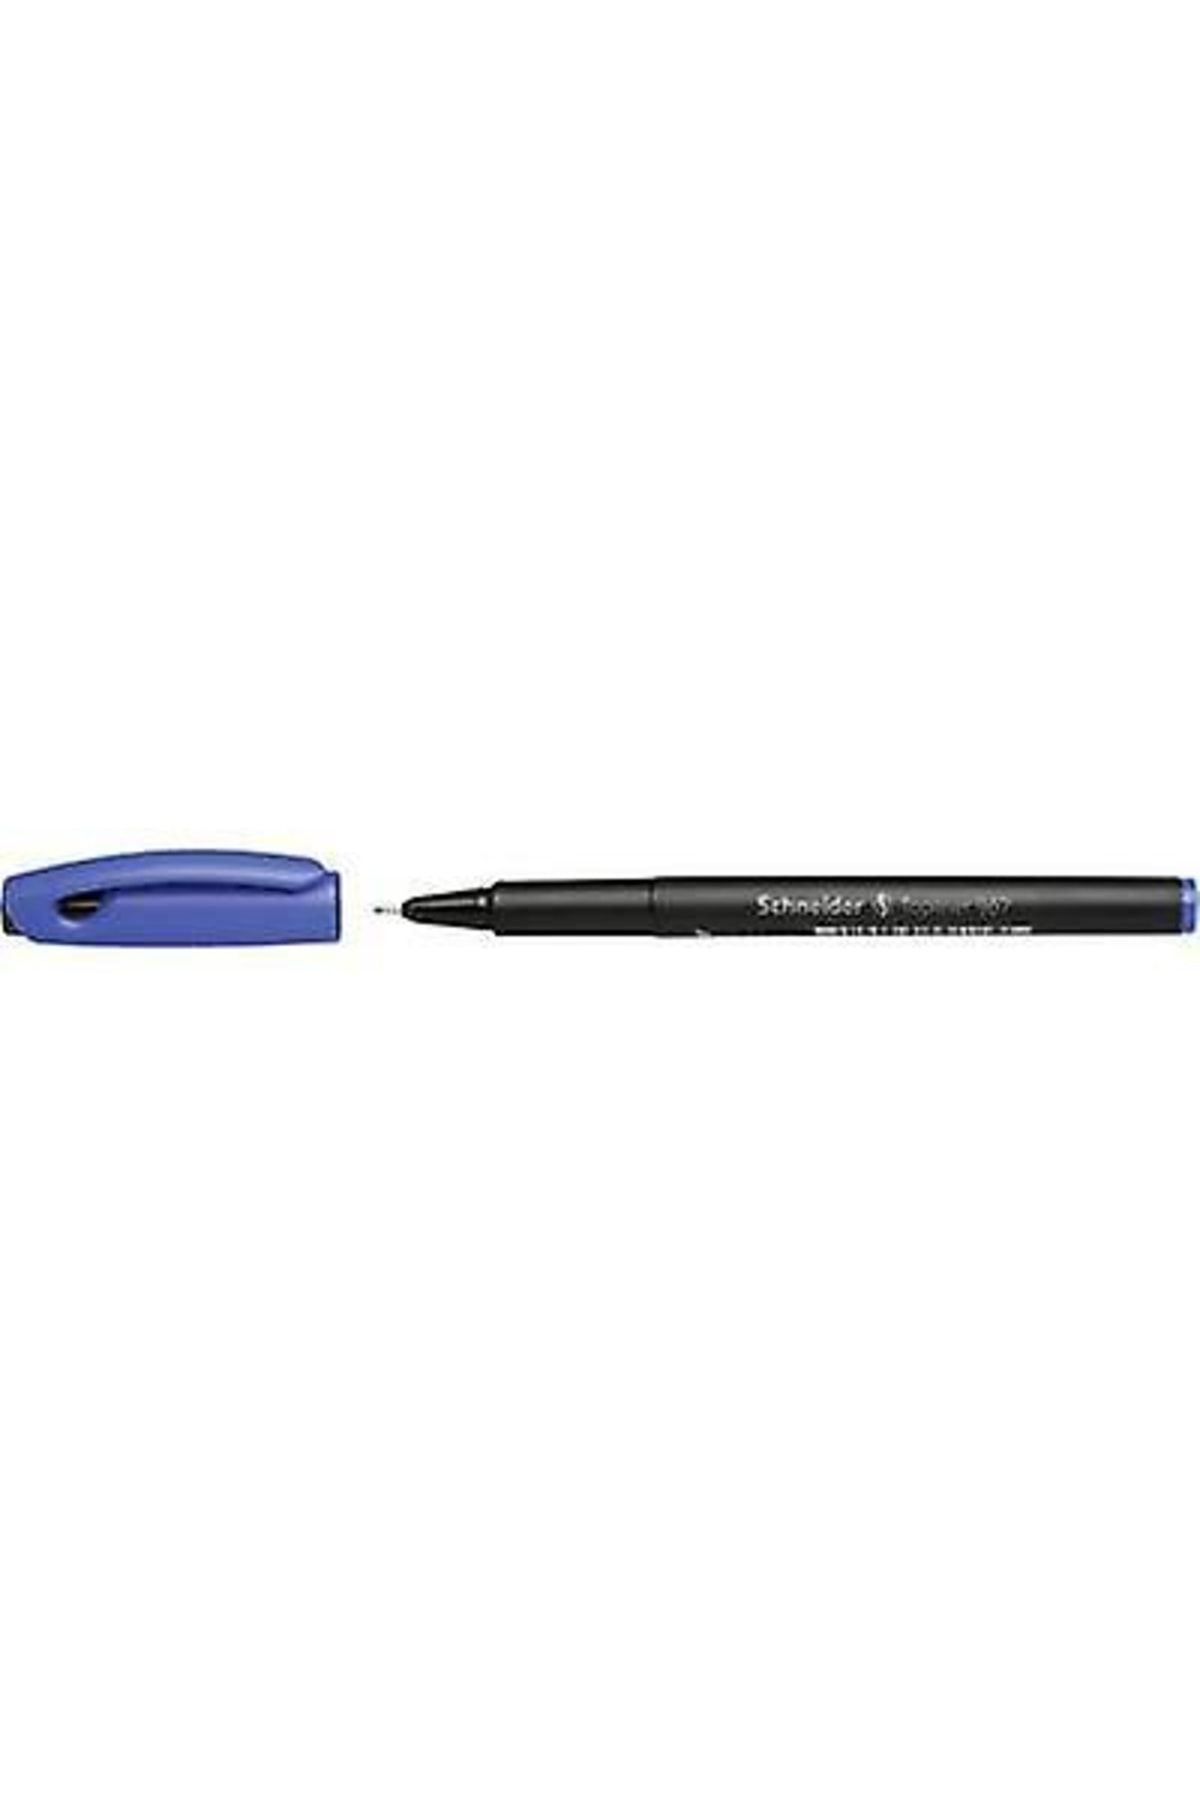 Schneider Keçeli Kalem 0.4mm Mavi